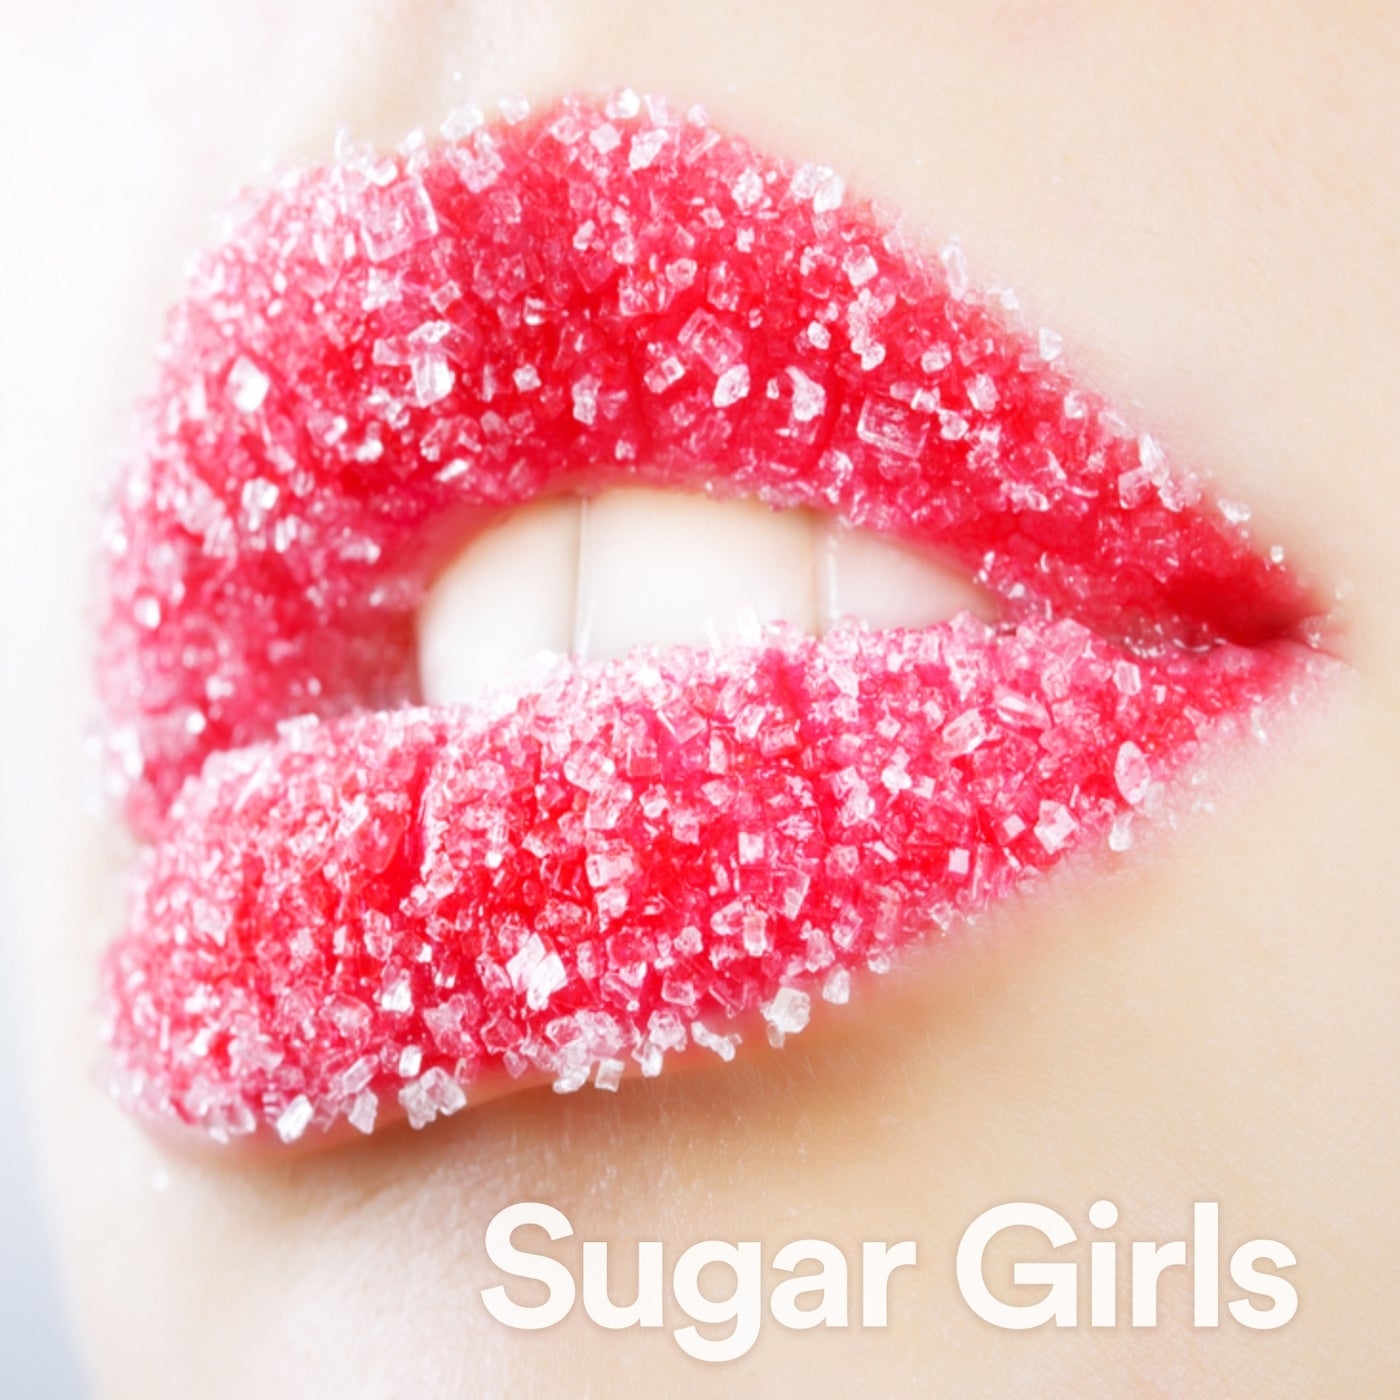 Sugar Girls (Indie Sweet Voices)